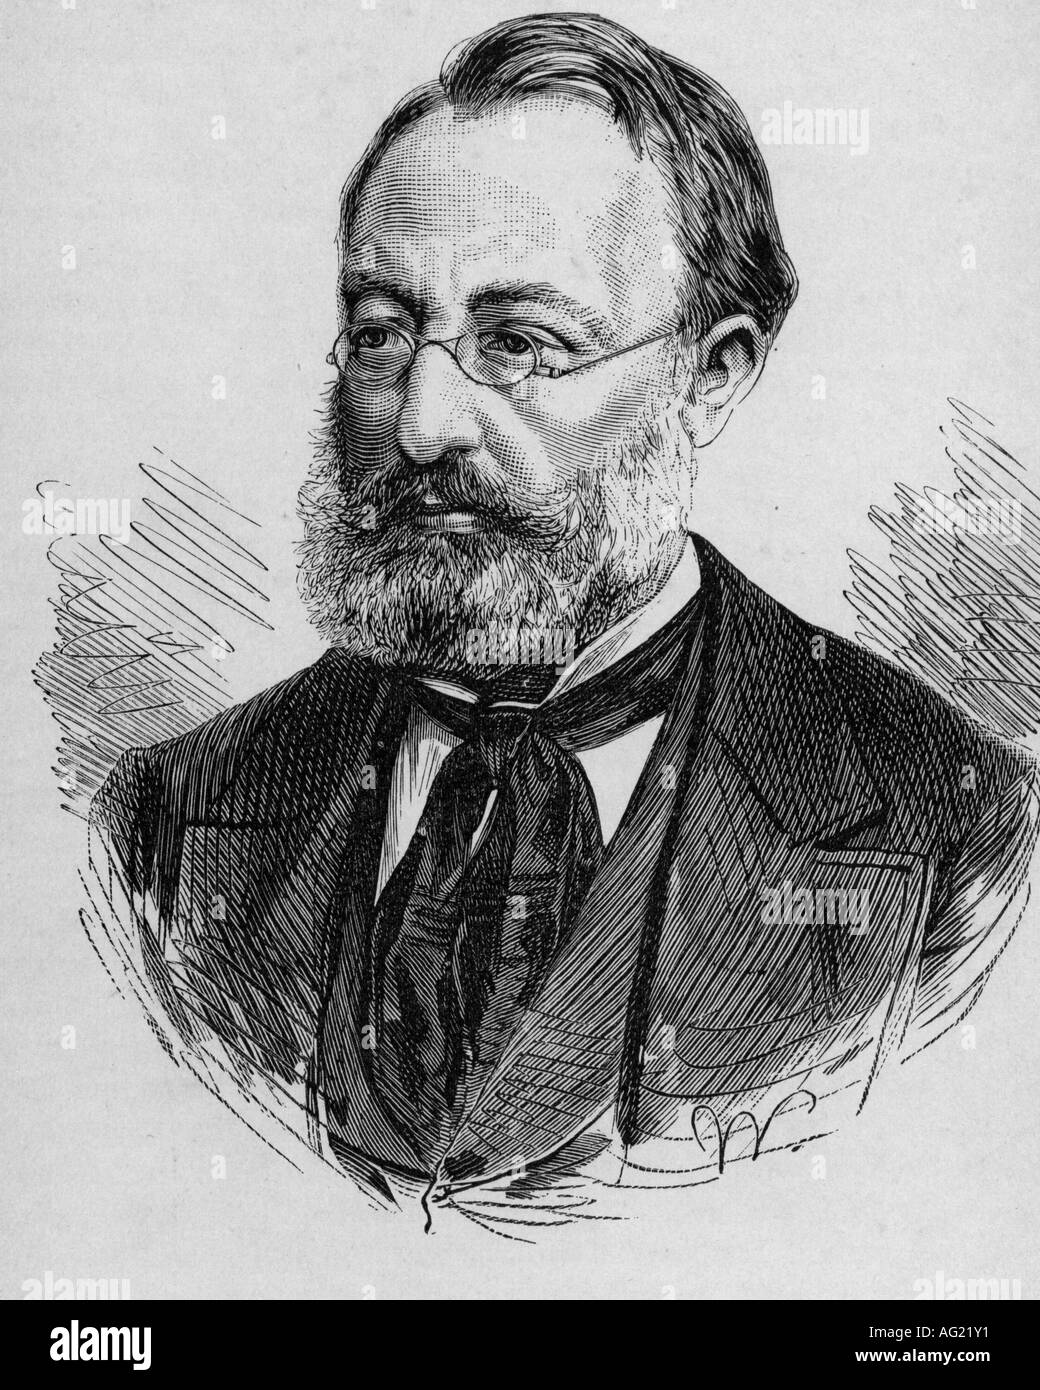 Keller, Gottfried, 19.7.1819 - 16.7.1890, Schweizer Maler & Autor/Schriftsteller, Porträt, Gravur, ca. um 1880, Literatur, 19. Jahrhundert, Stockfoto